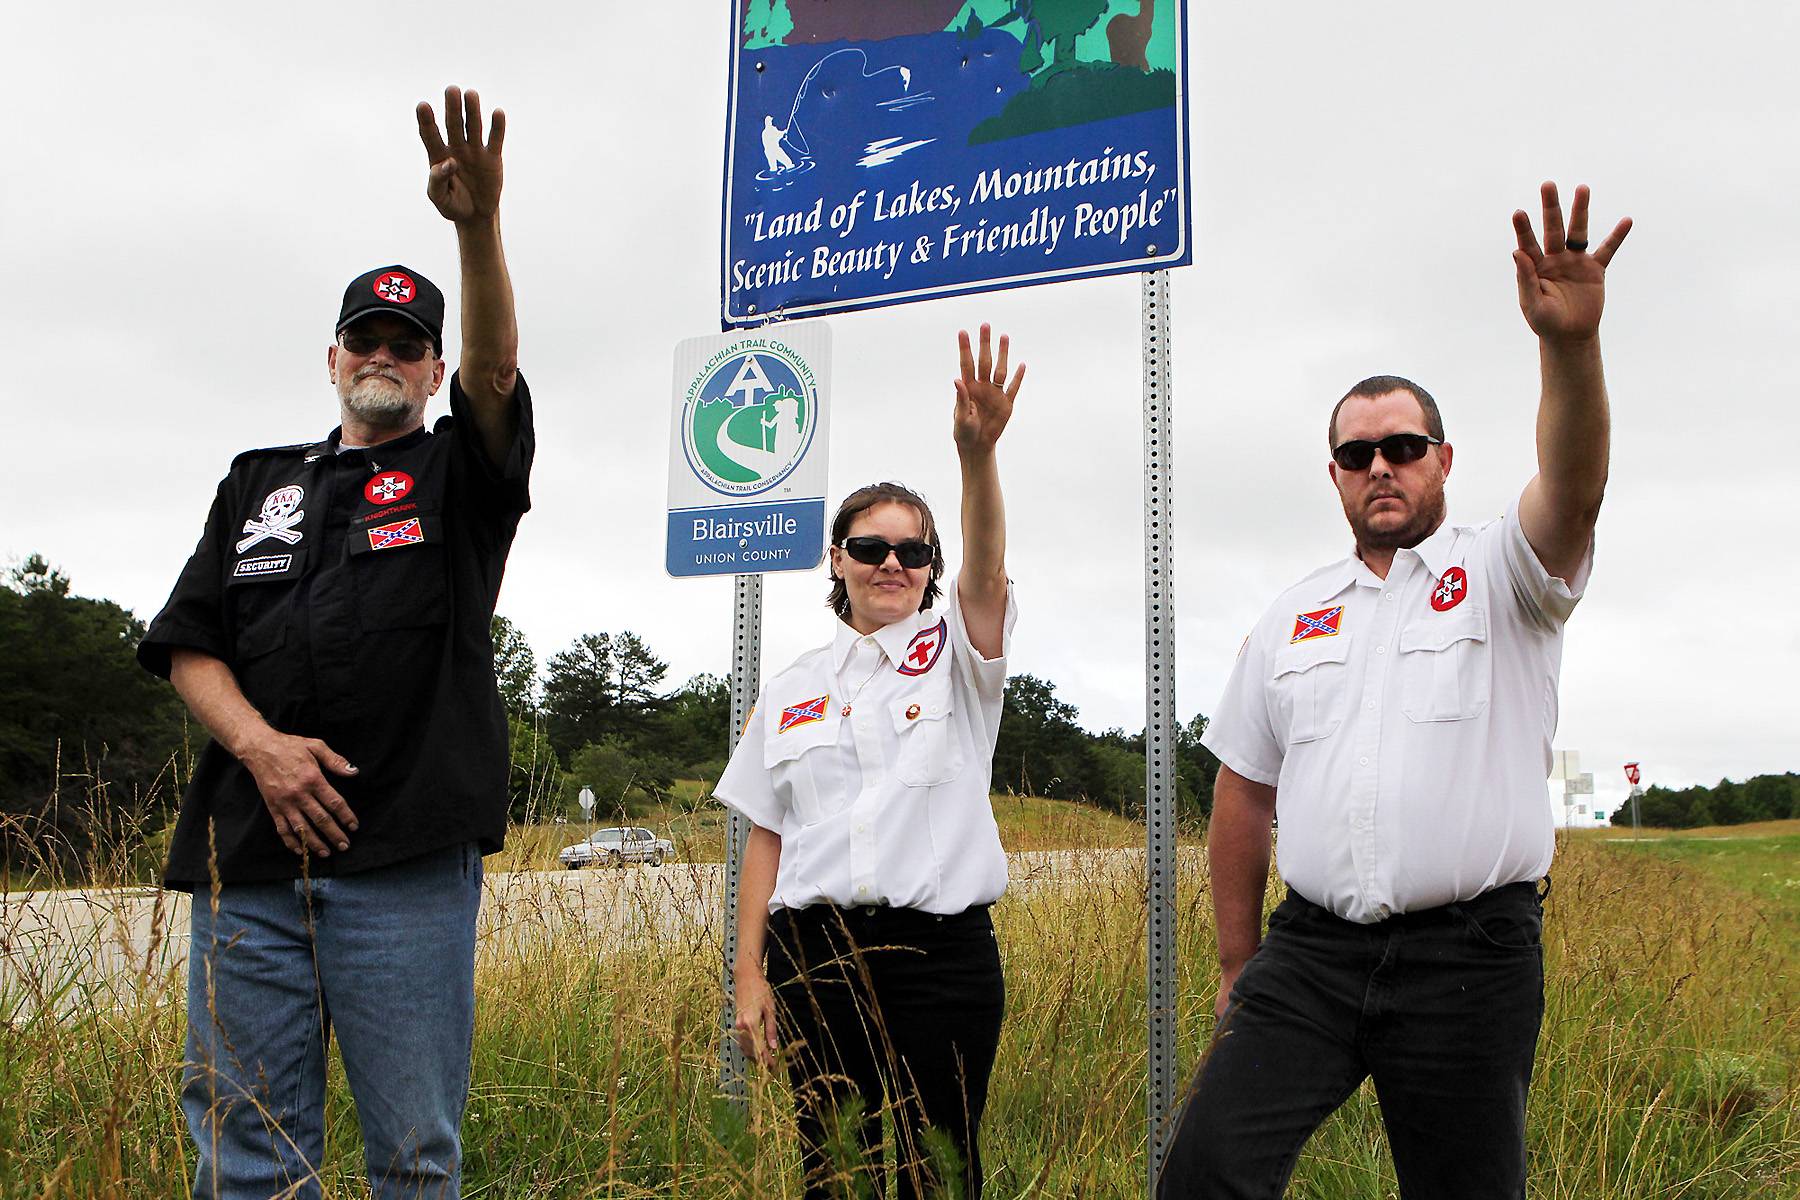 Ku Klux Klan, Adopt-A-Highway